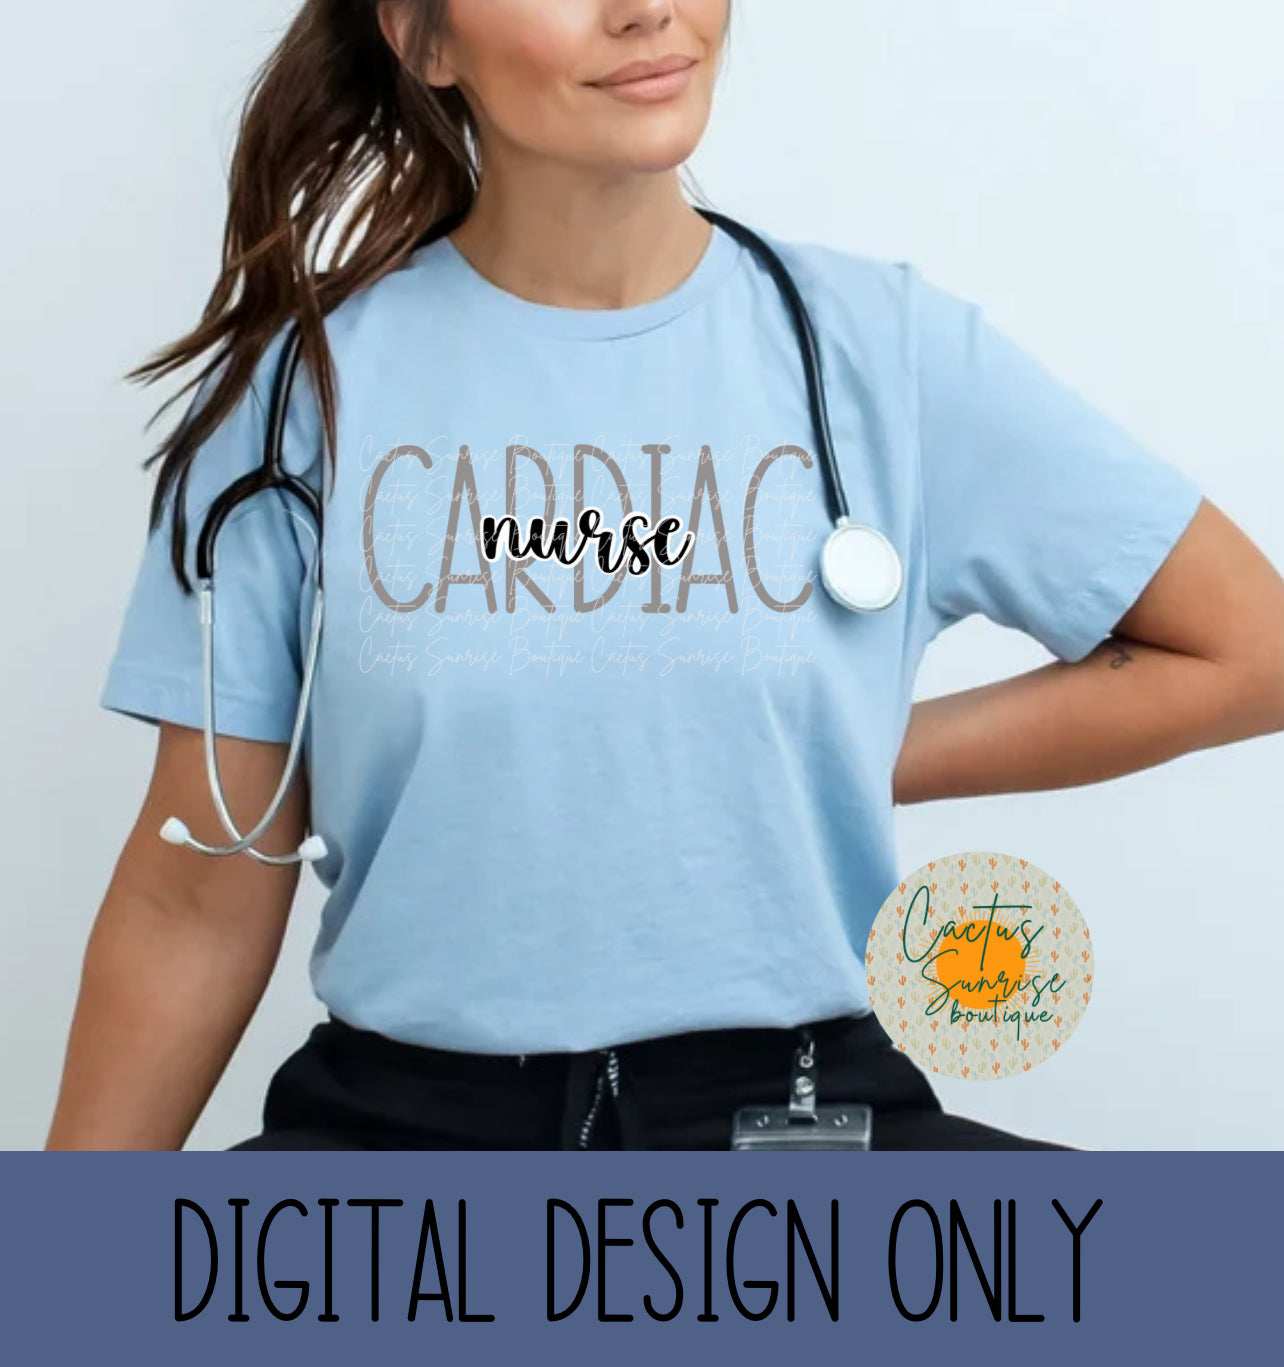 Cardiac Nurse Grey Digital file- No physical product